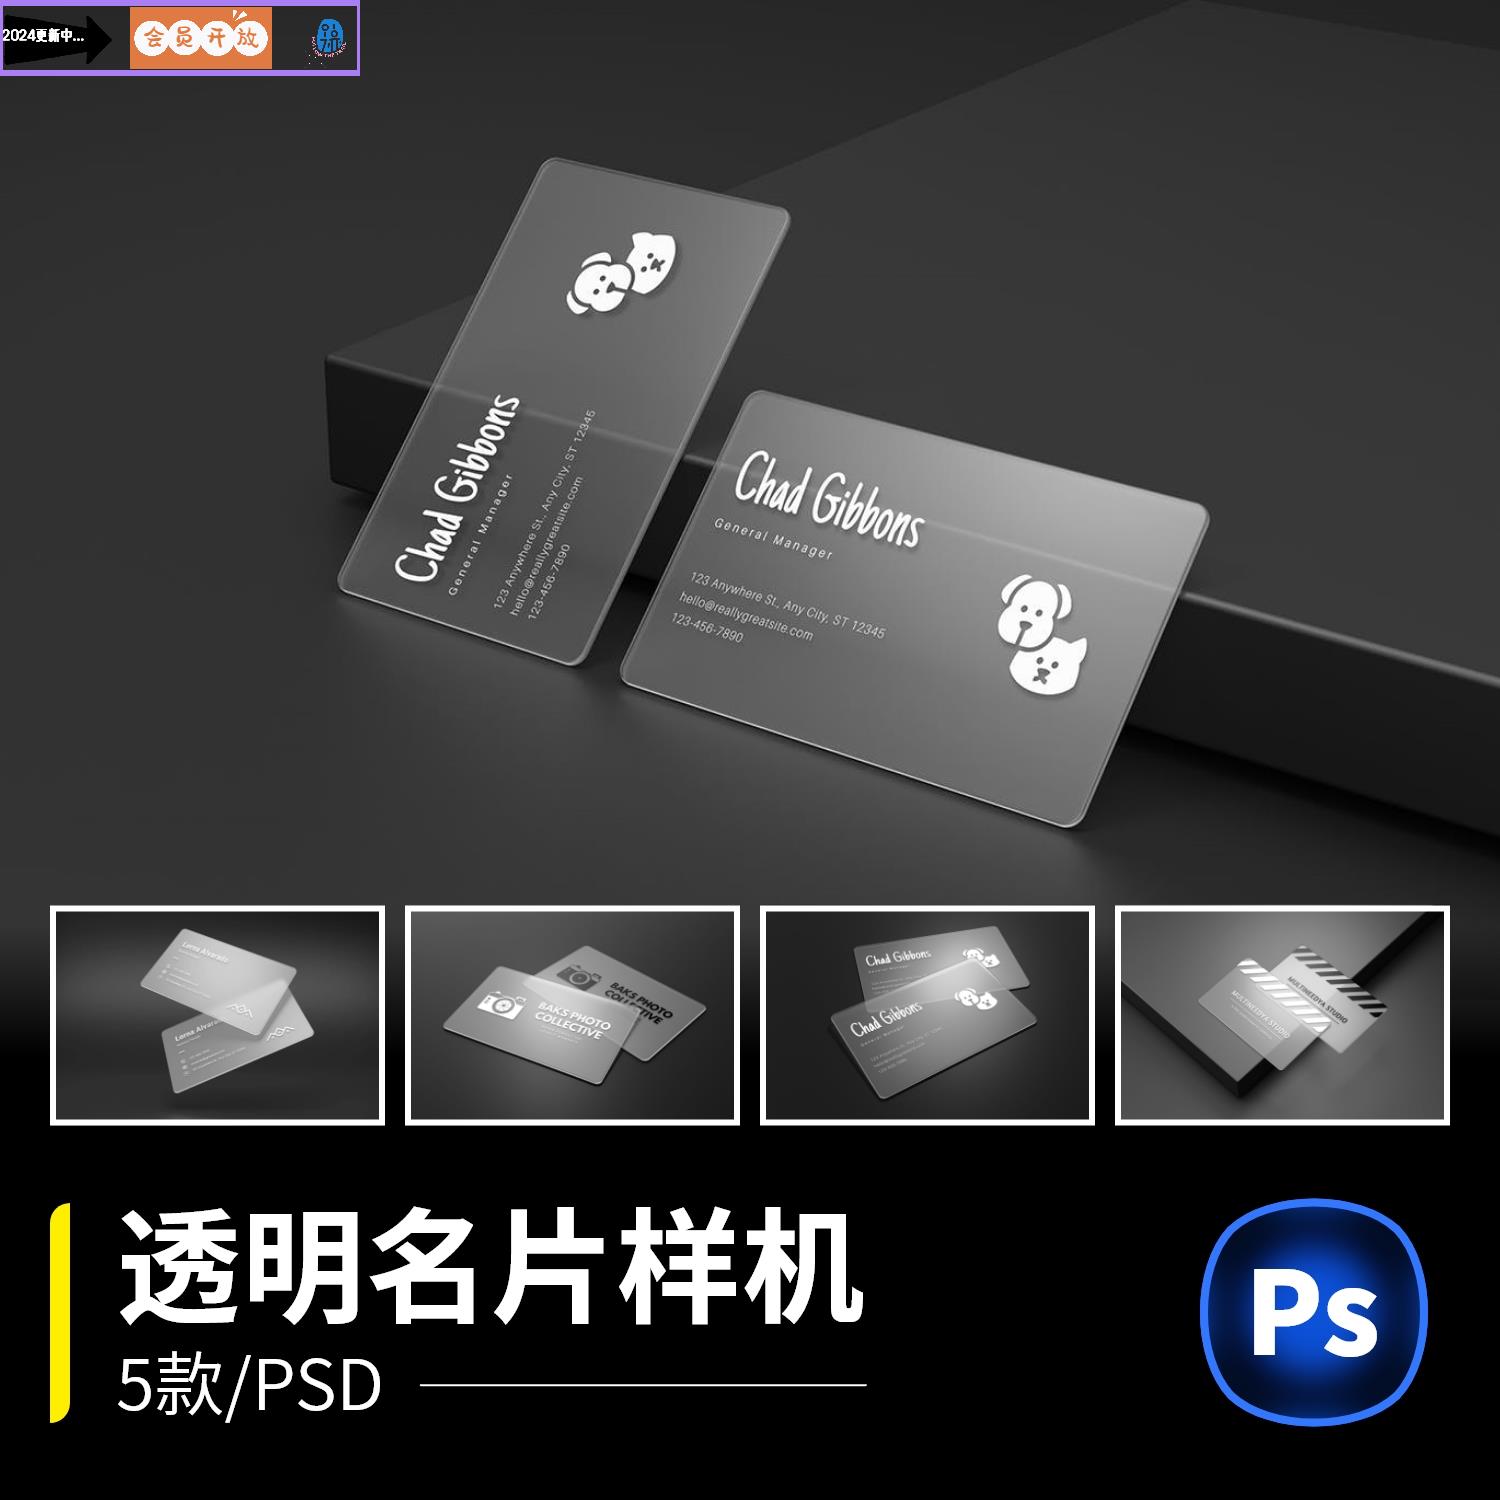 名片样机简约透明高端卡片效果图展示VI智能贴图PSD样机设计素材